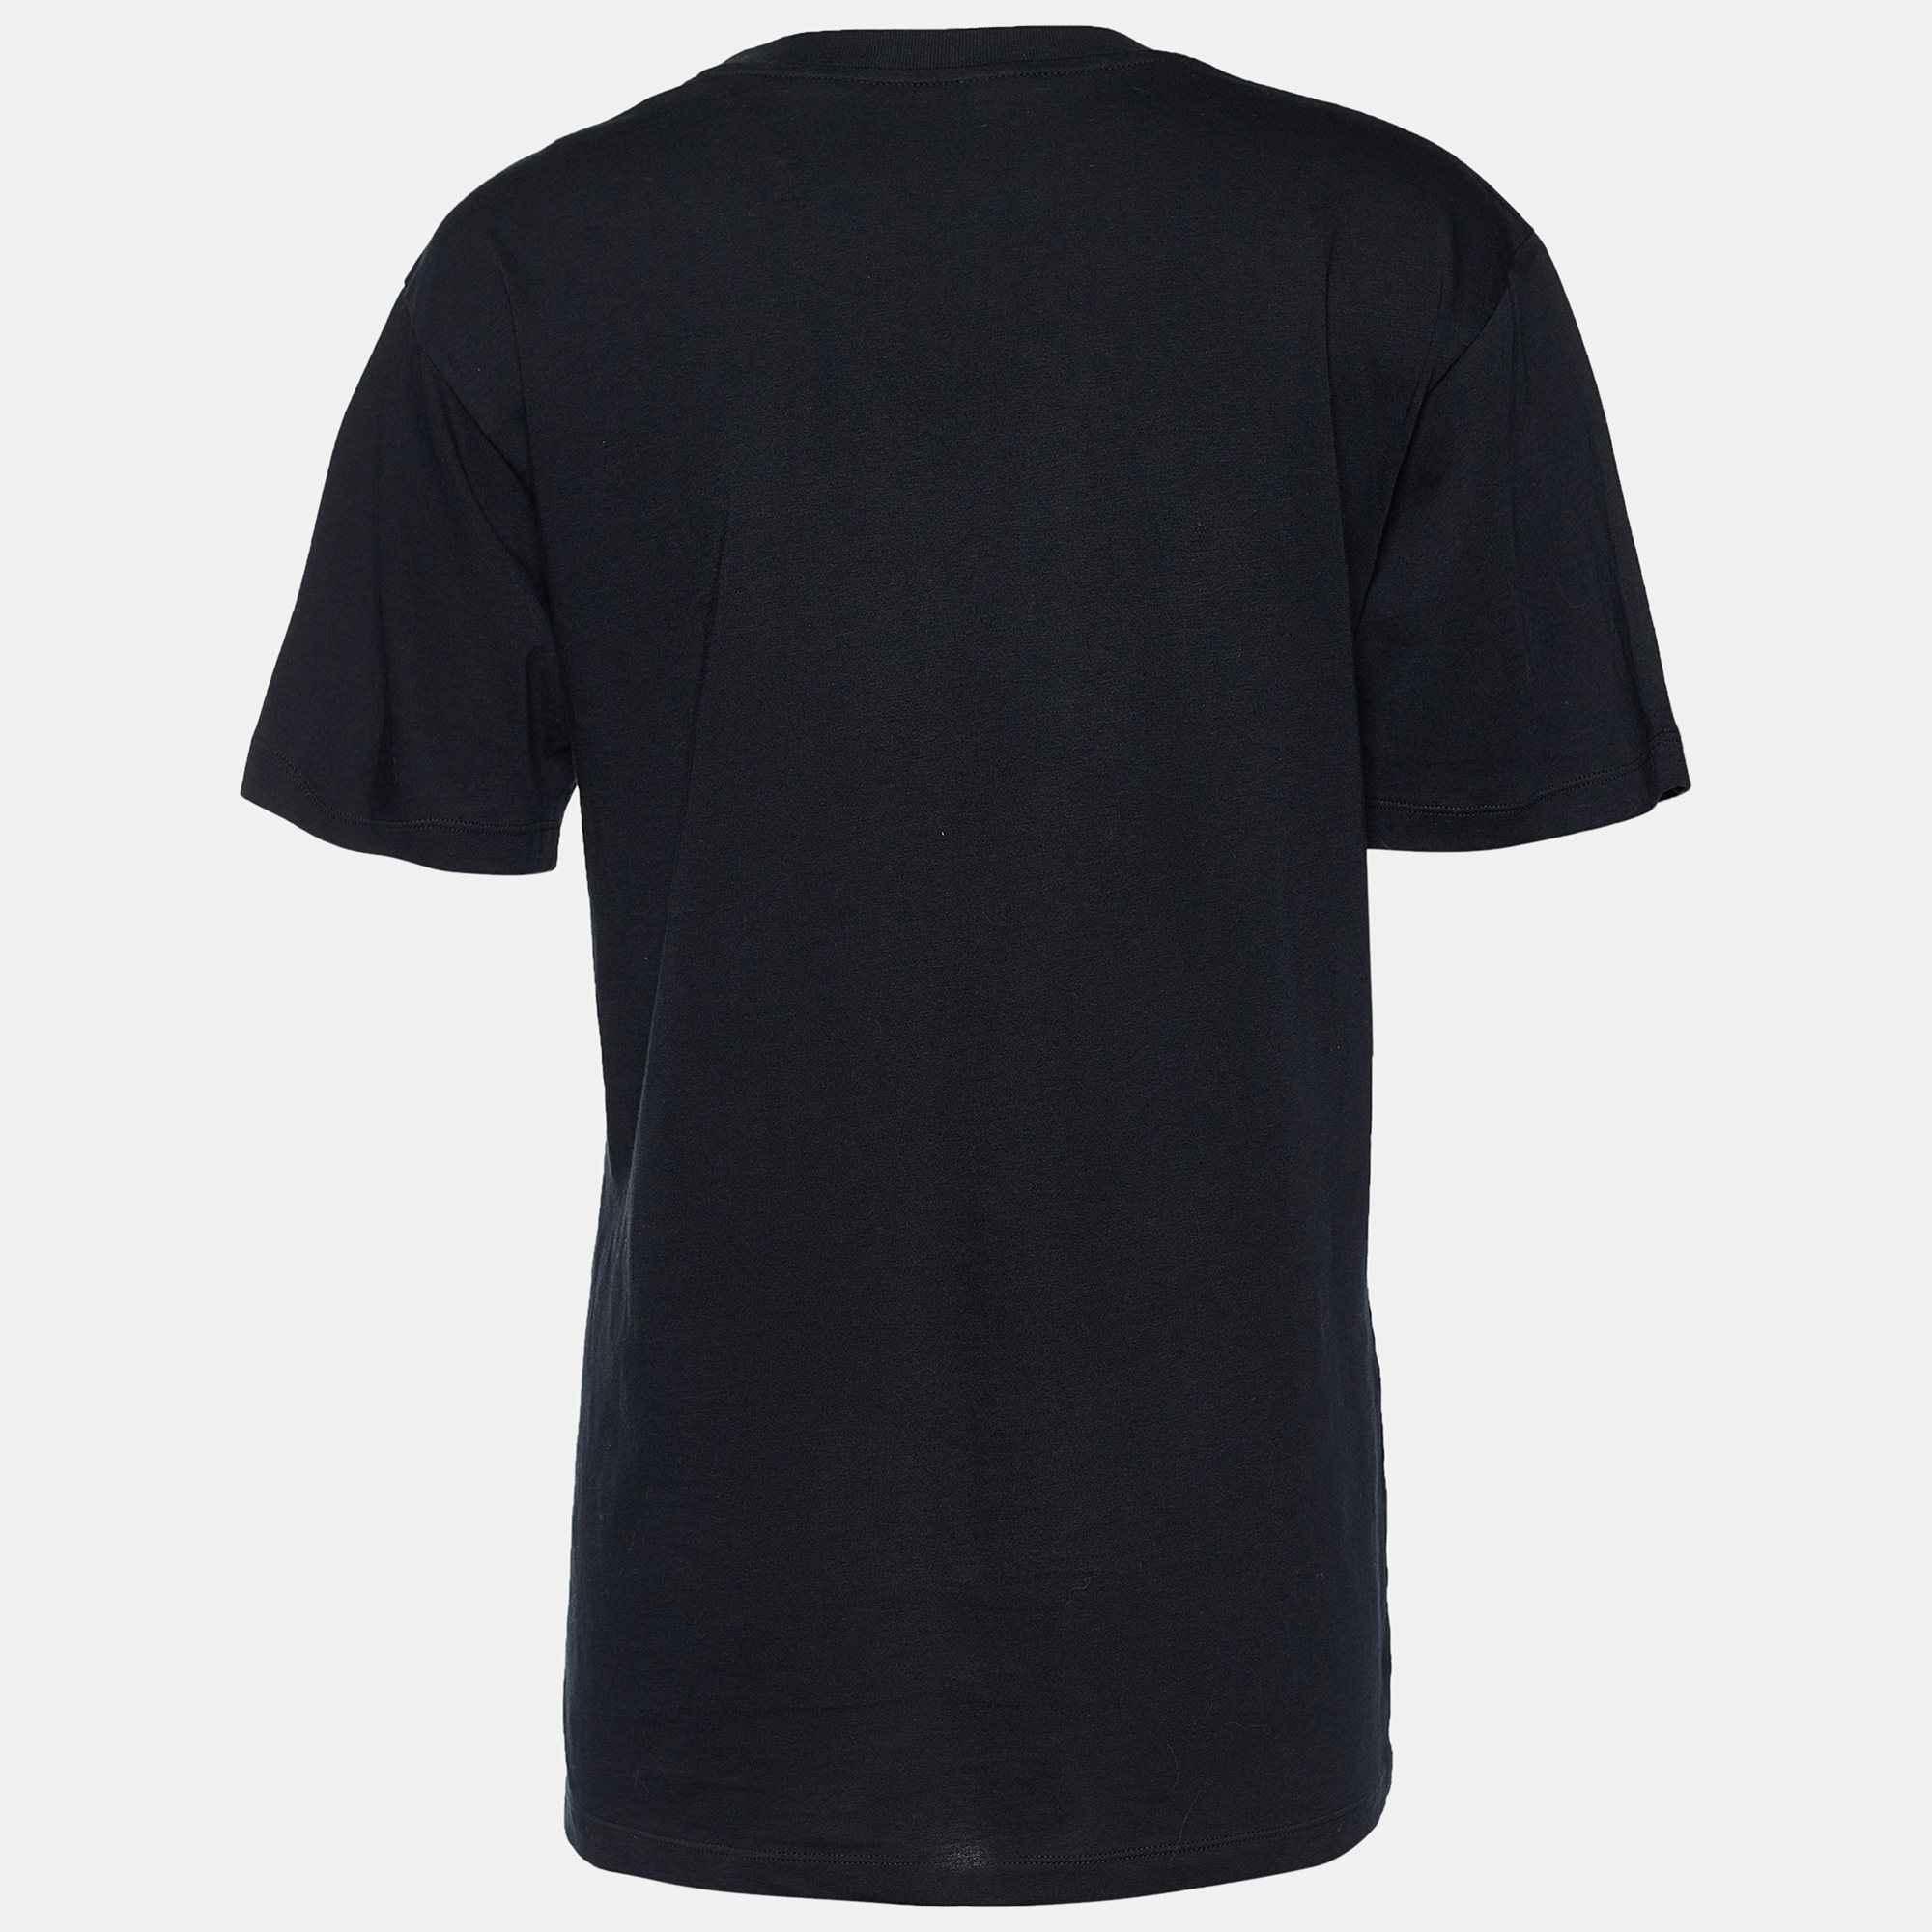 

Gucci Black Cat Applique Cotton Jersey T-Shirt